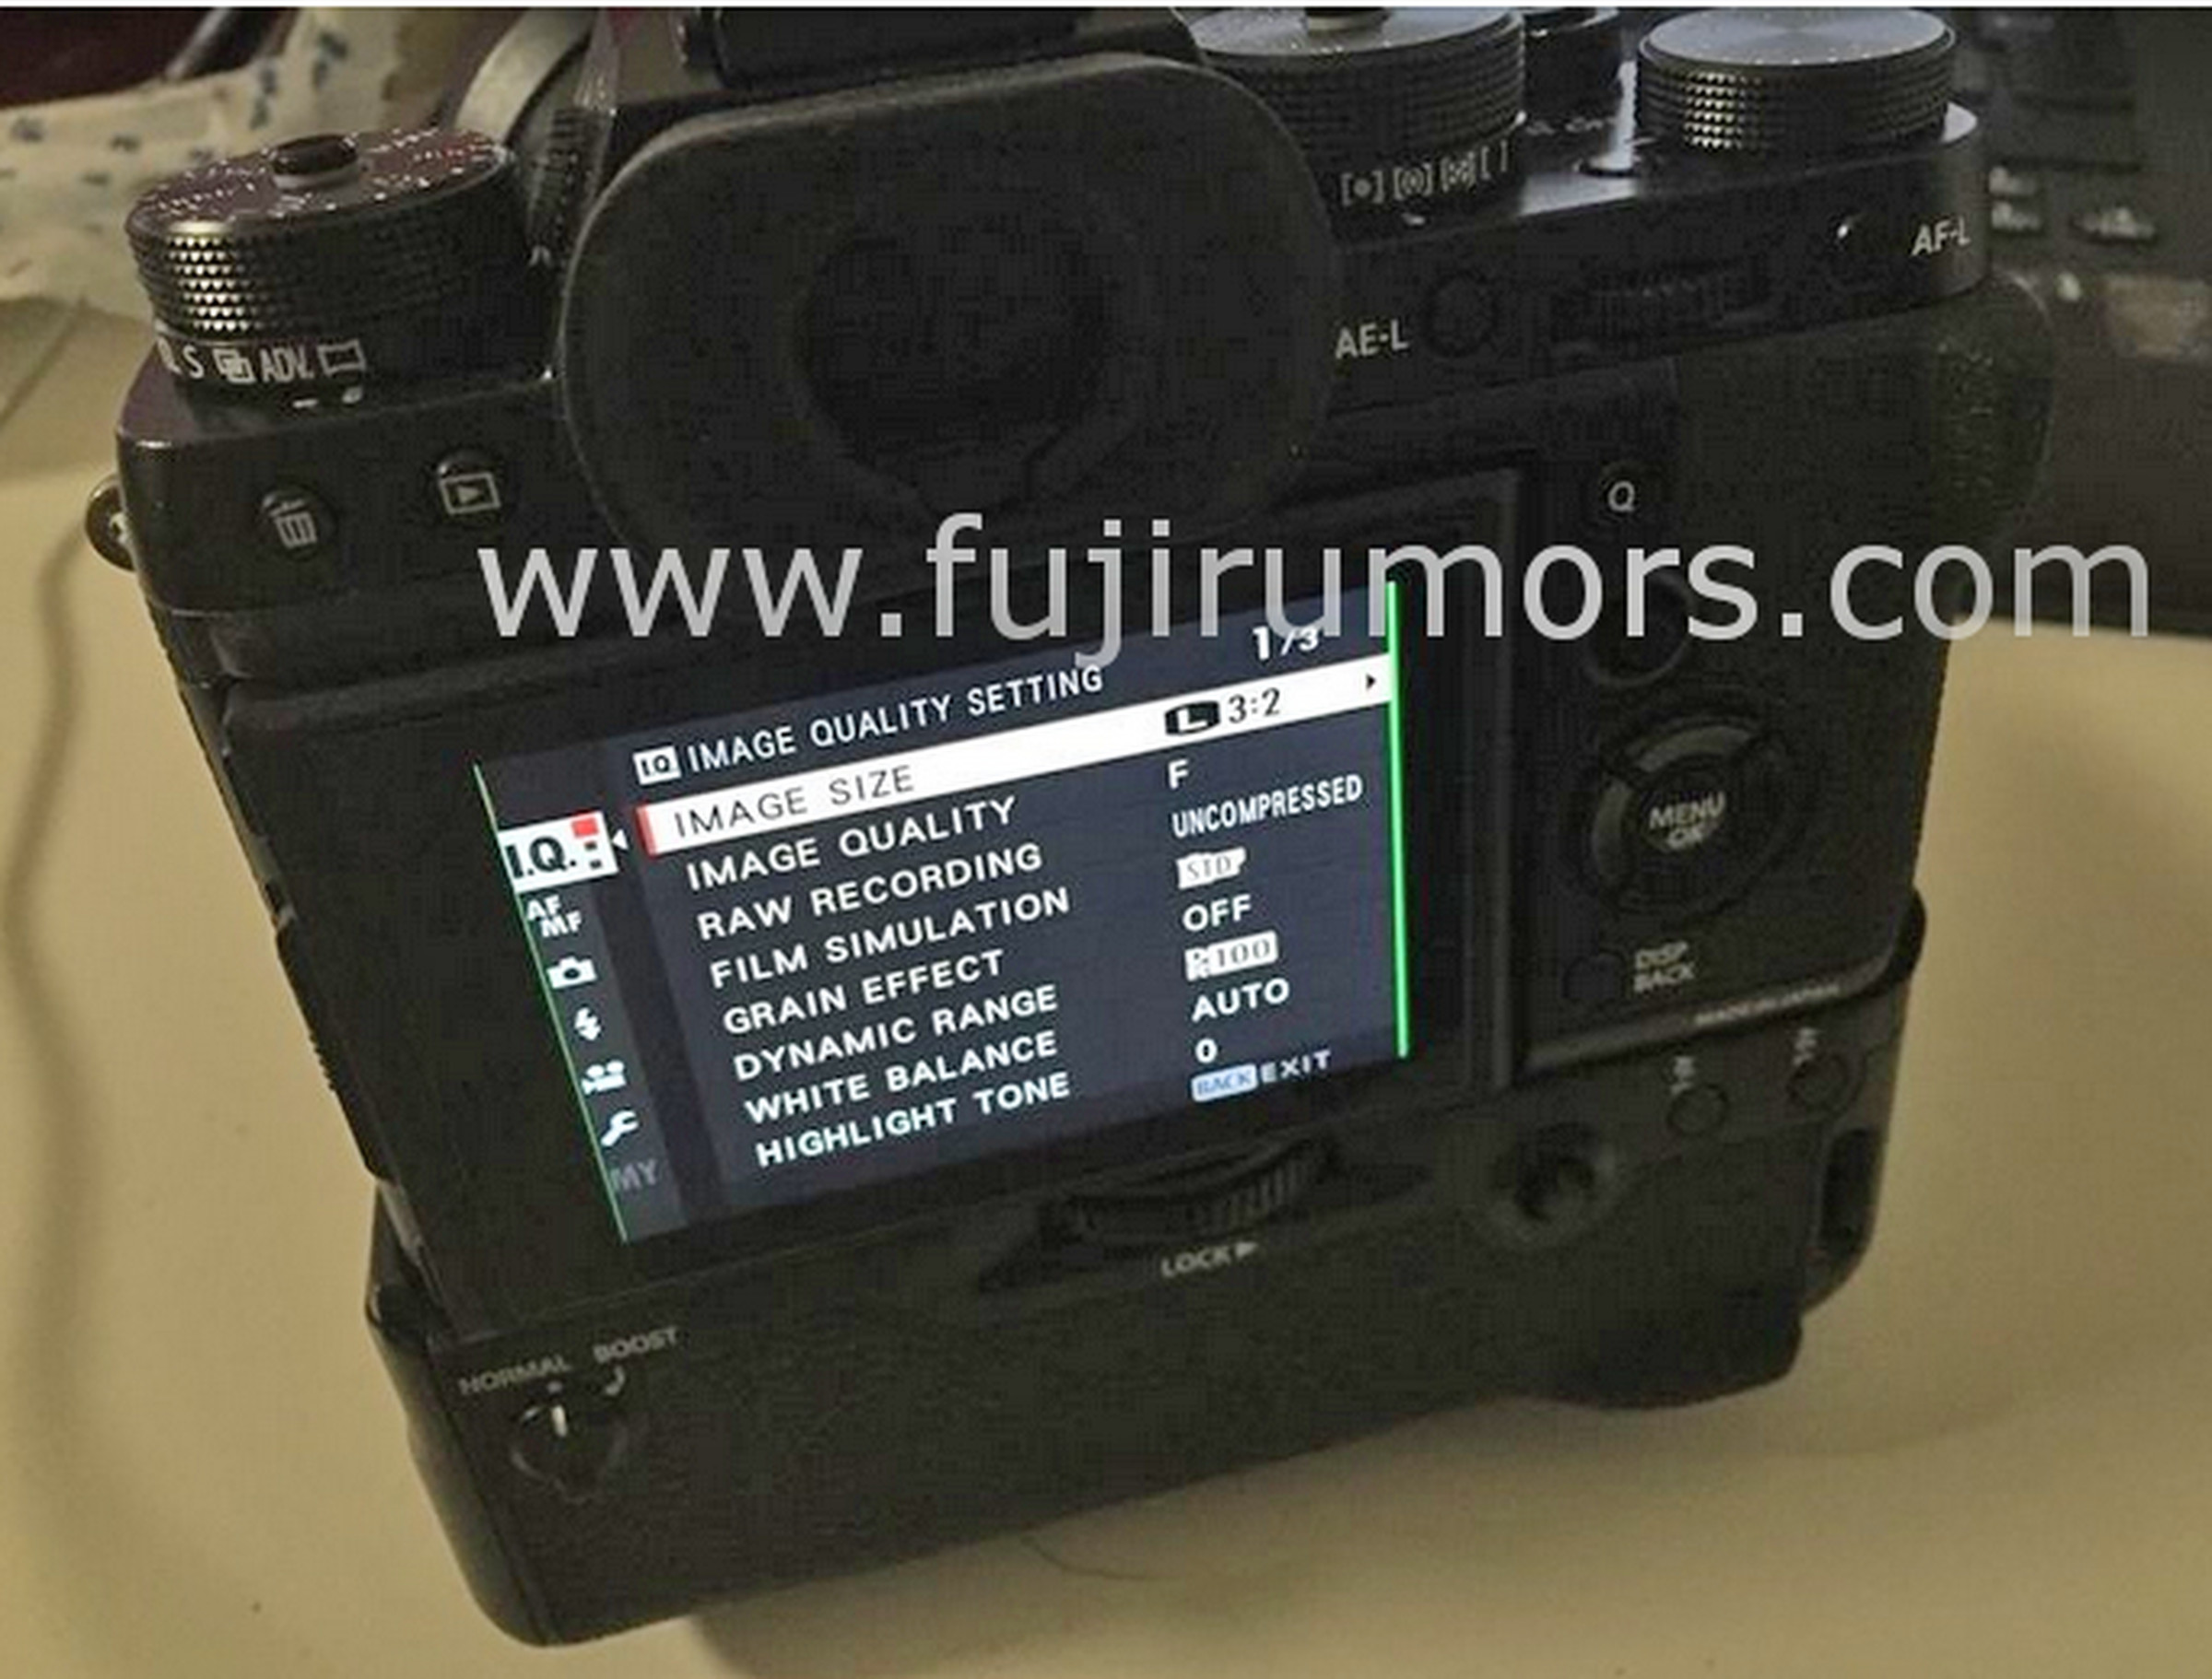 Fujifilm X-T2 leak